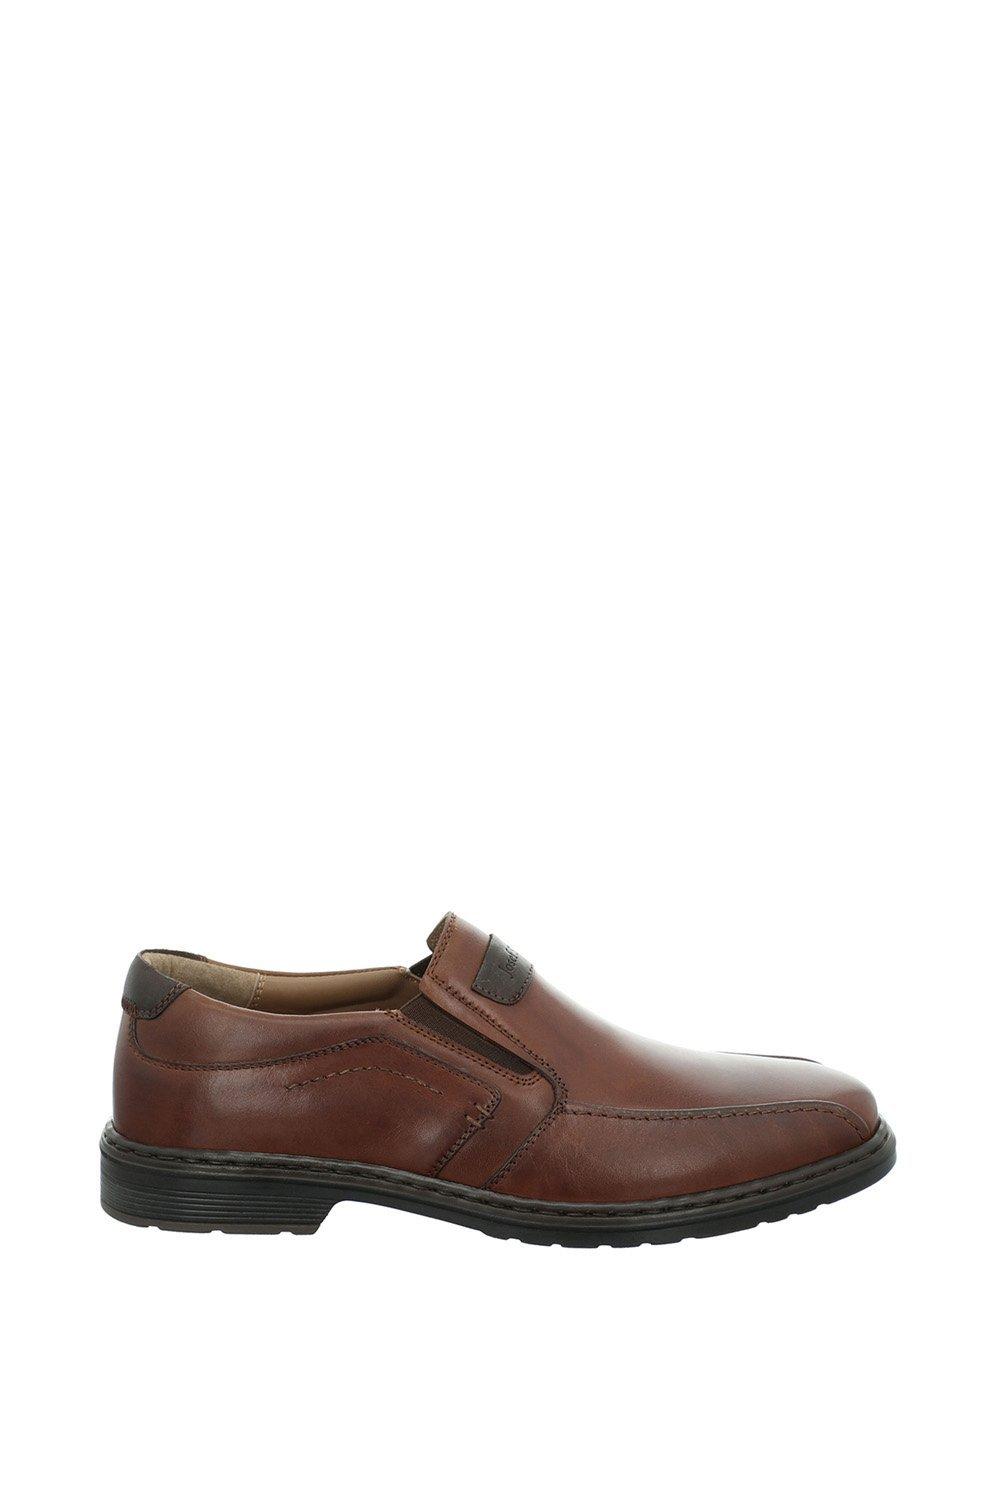 Туфли без шнуровки «Аластер 03» Josef Seibel, коричневый туфли без шнуровки benjy ii bugatti коричневый